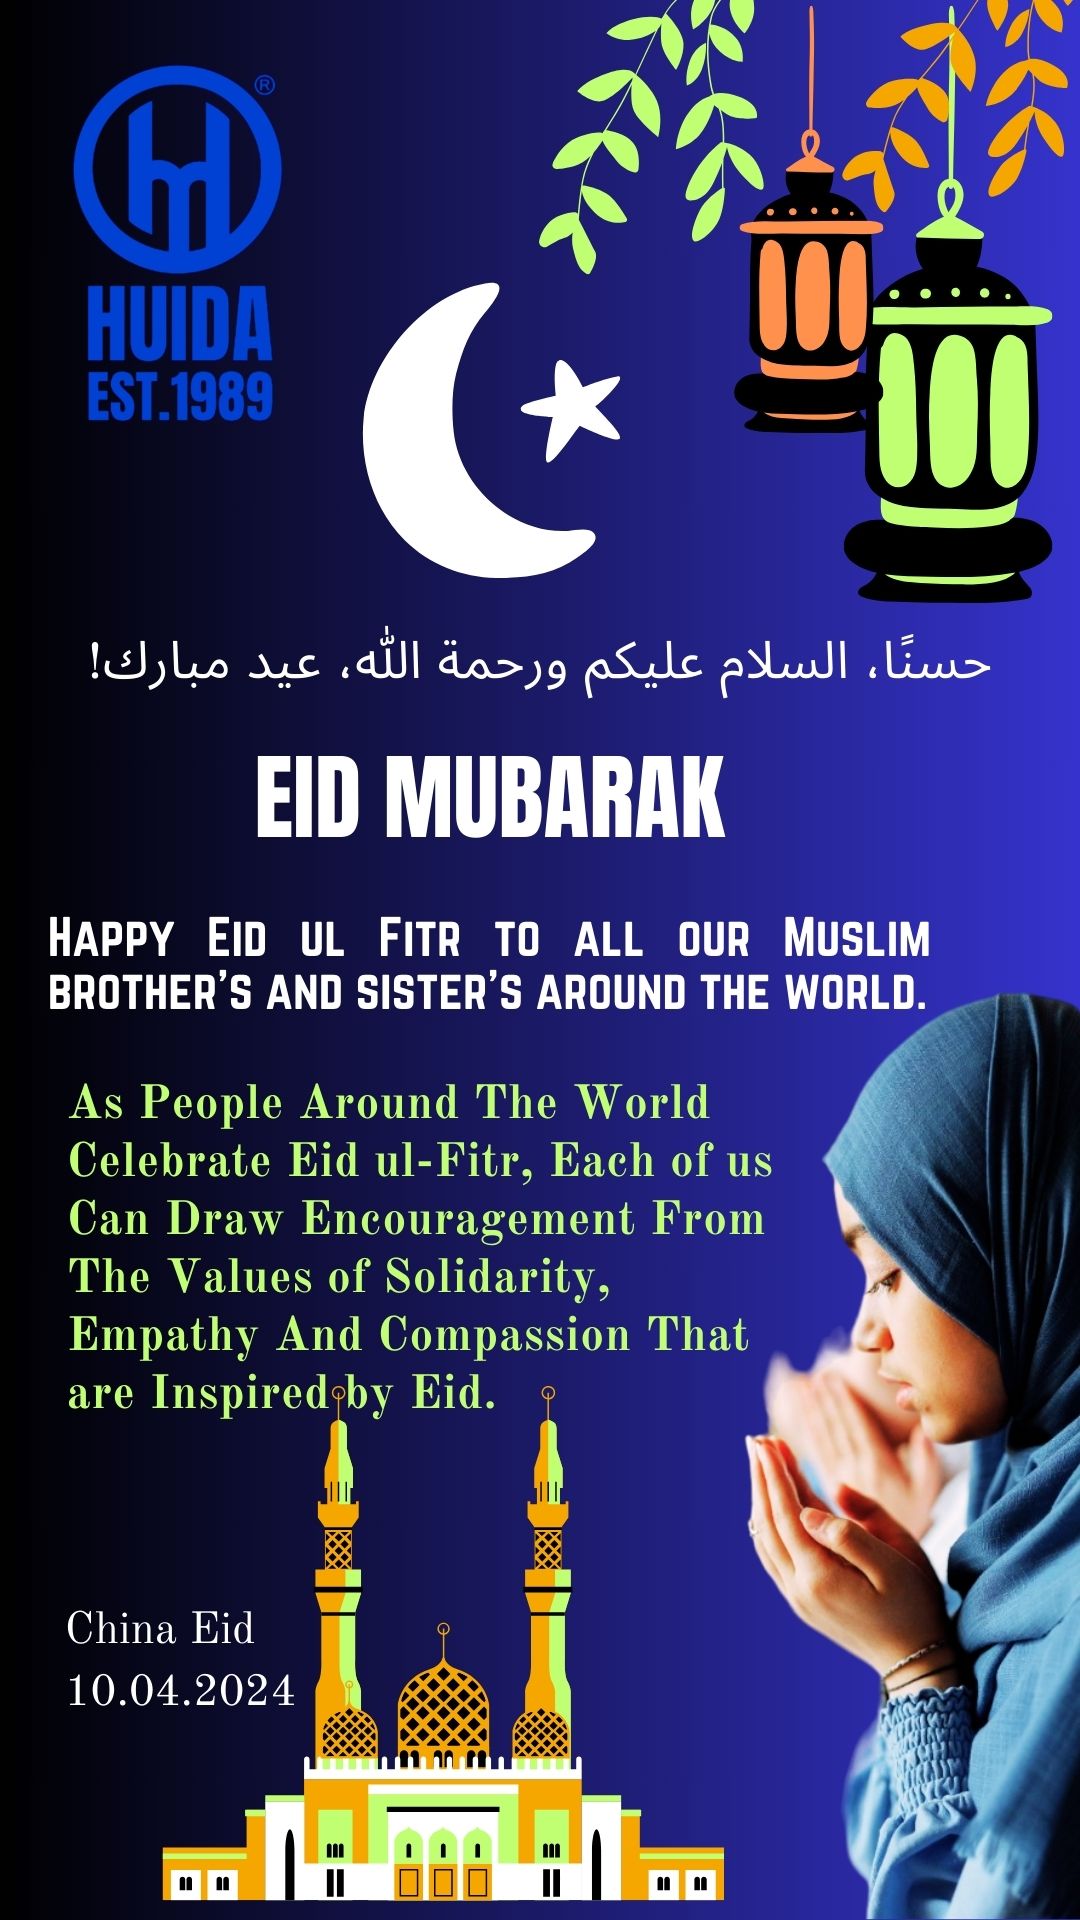 عيد فطر سعيد لجميع إخواننا وأخواتنا المسلمين في جميع أنحاء العالم.